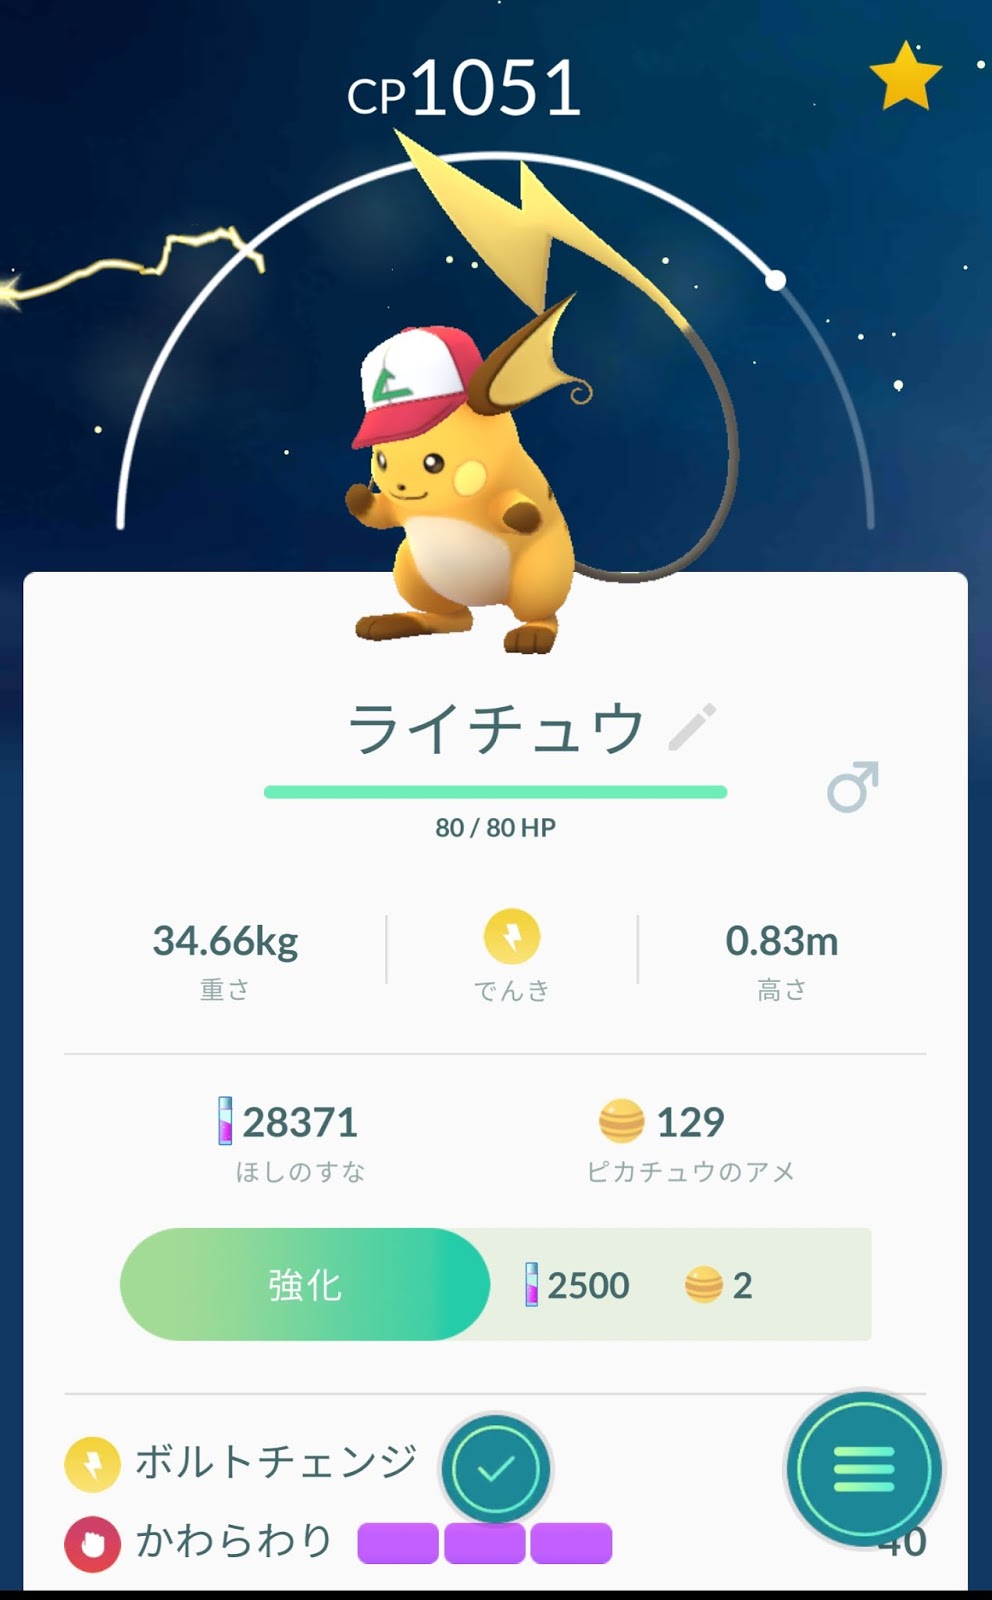 ポケモンgo日記 Pokemon Go Diary In Japan サトシの帽子のピカチュウ オス メス をライチュウ に進化させてみた